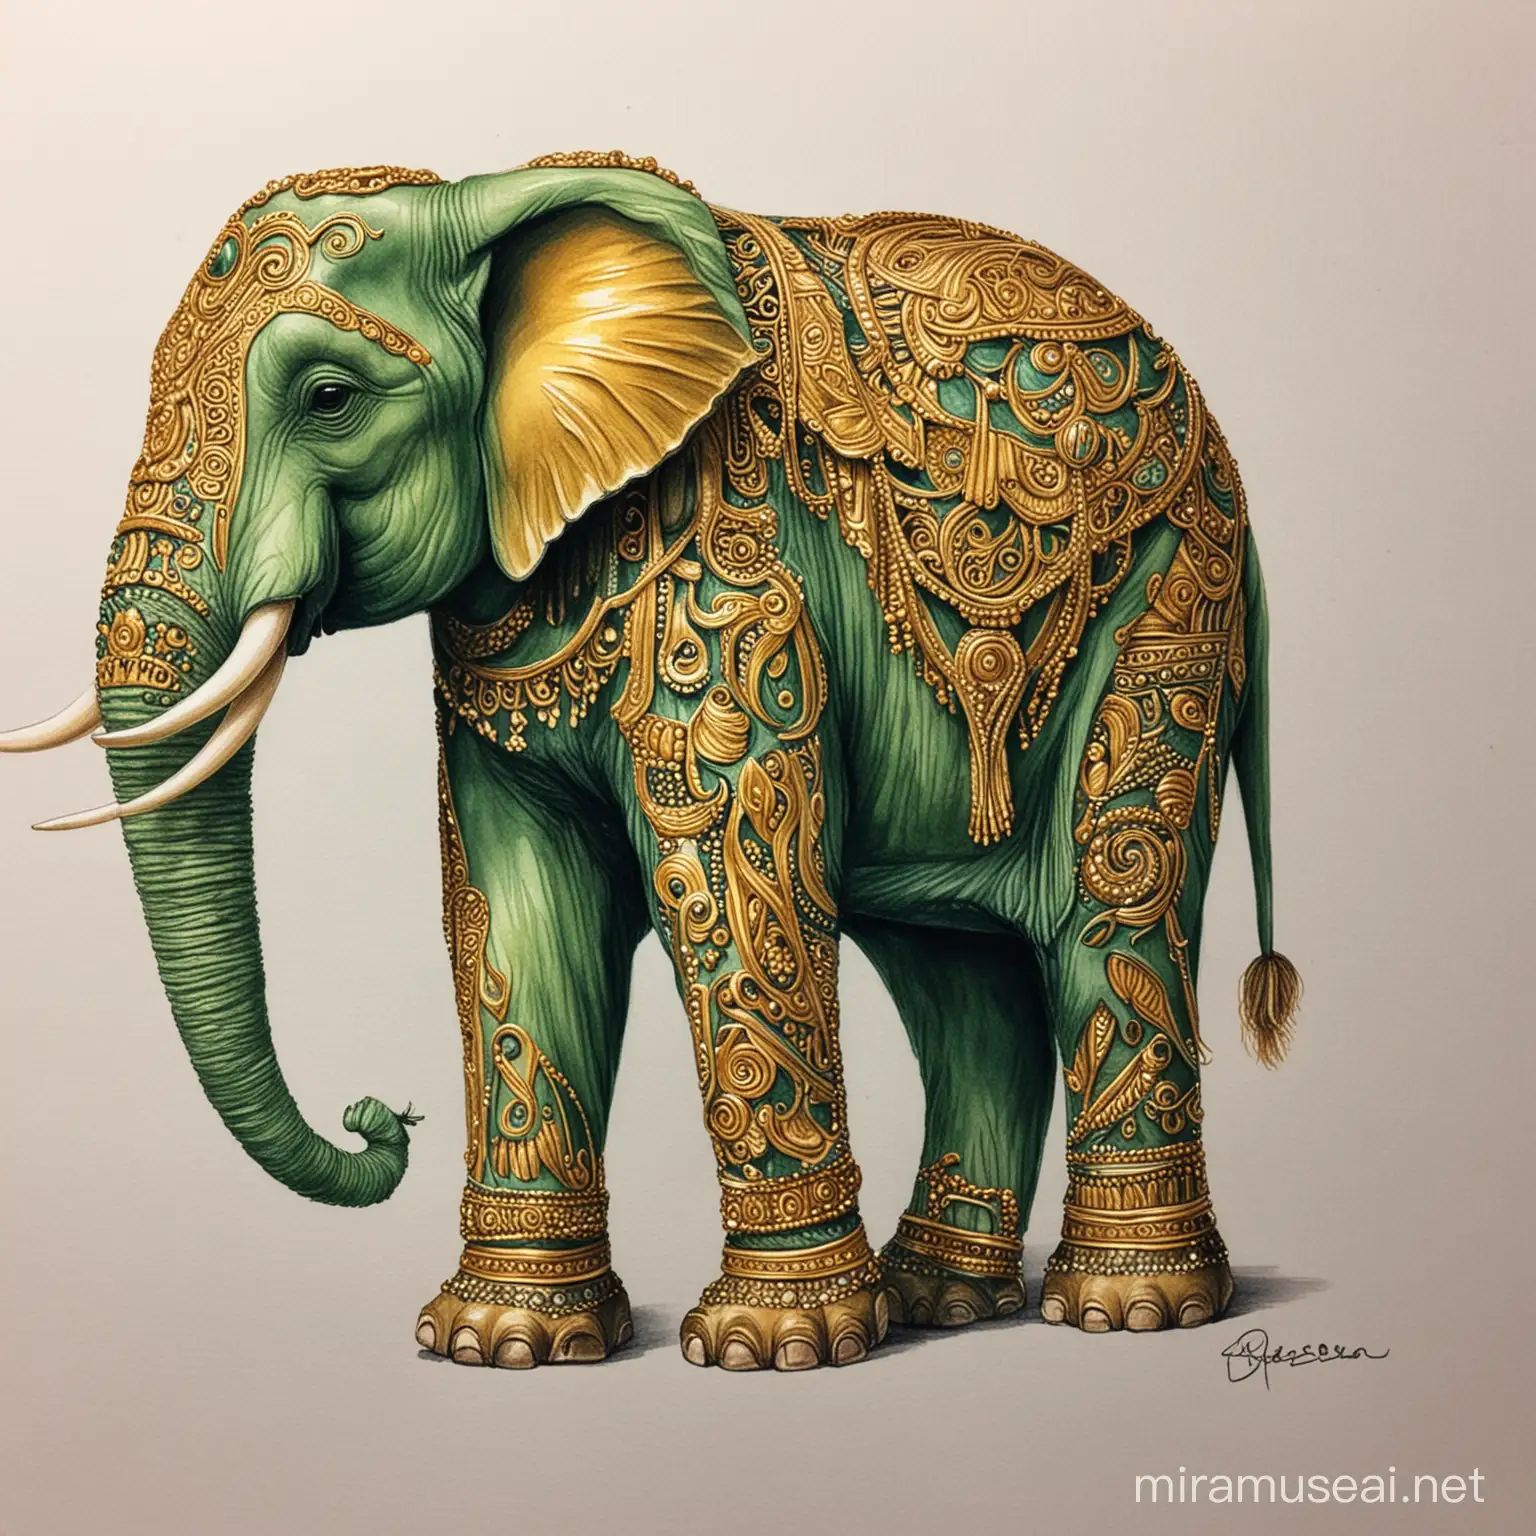 یک مهره فیل سبز و طلایی هم اگر میتونی برای من بساز . این مهره را سعی کن خیلی فانتزی به تصویر بکشی 
 